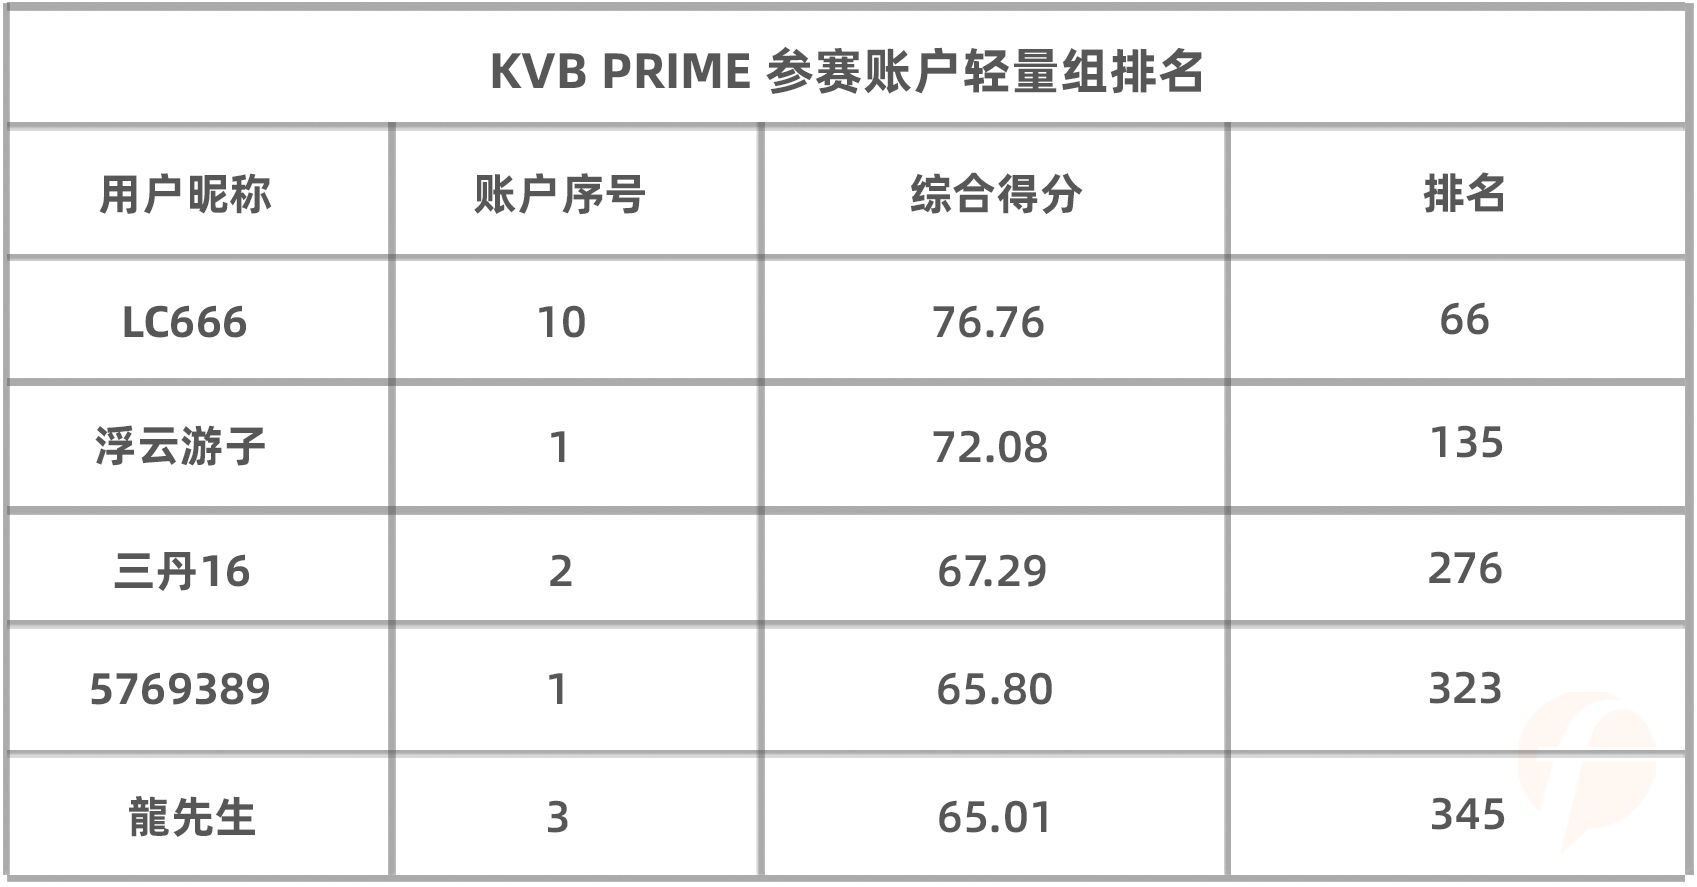 KVB PRIME组第一名竟是个大佬！其净值高达71万美金！